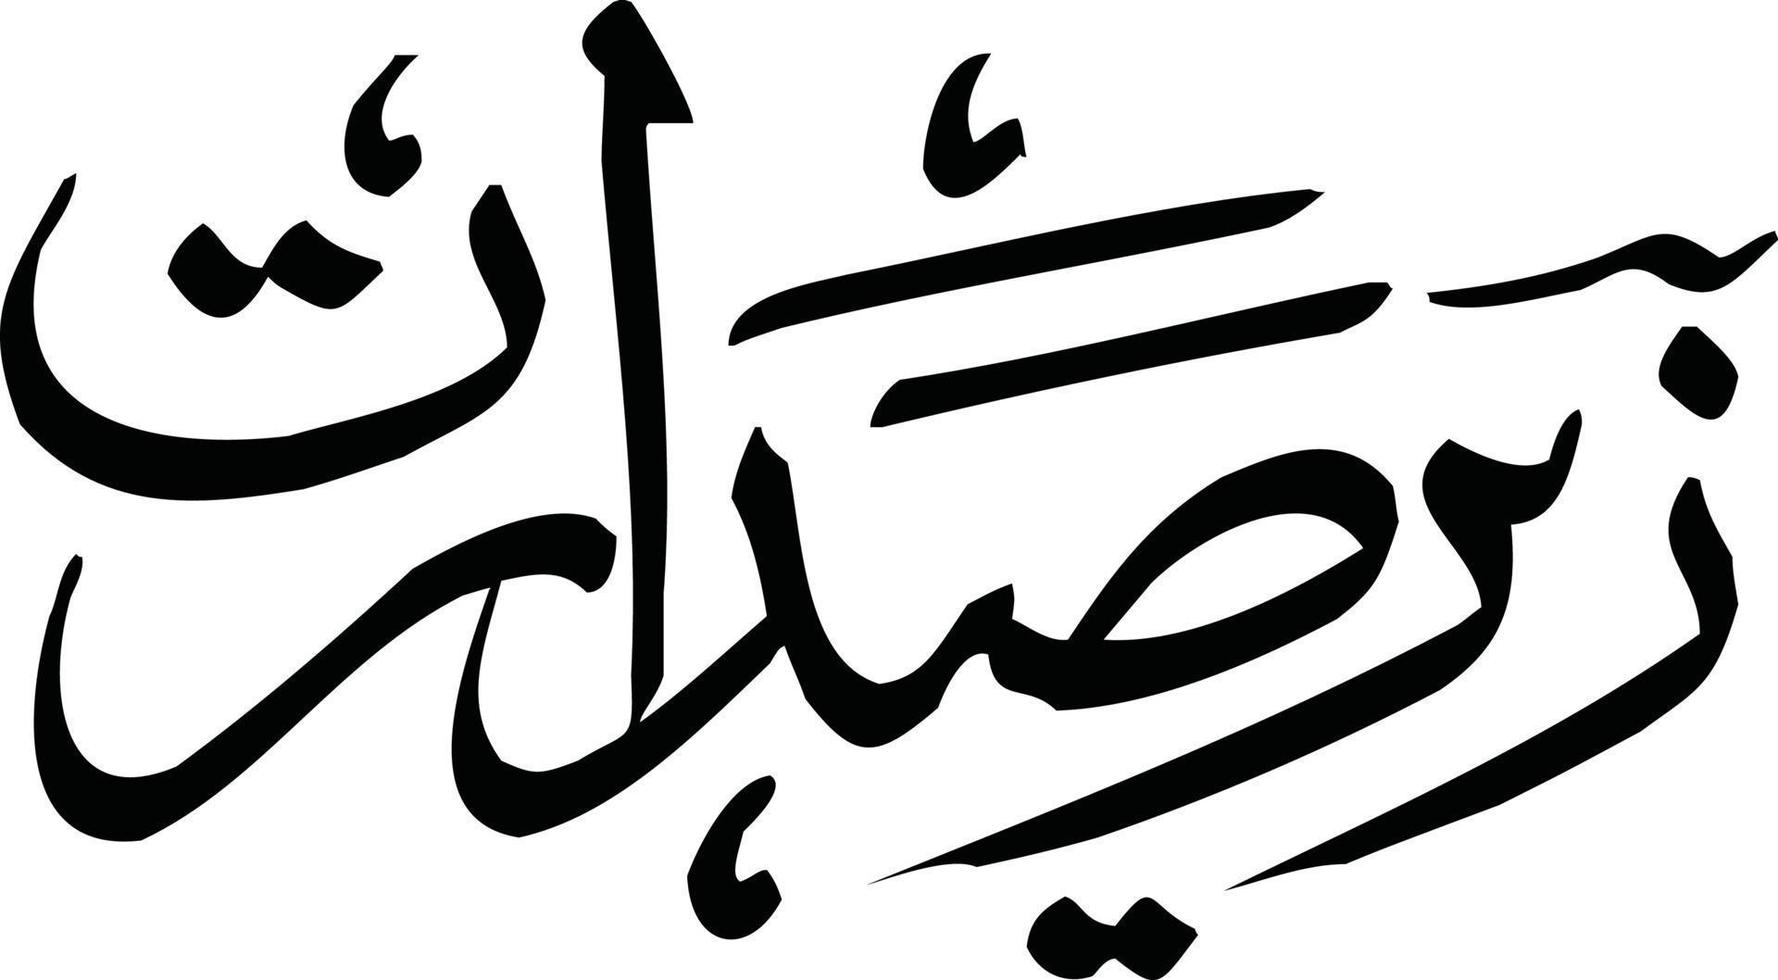 zeer sdarat titre calligraphie arabe islamique vecteur gratuit